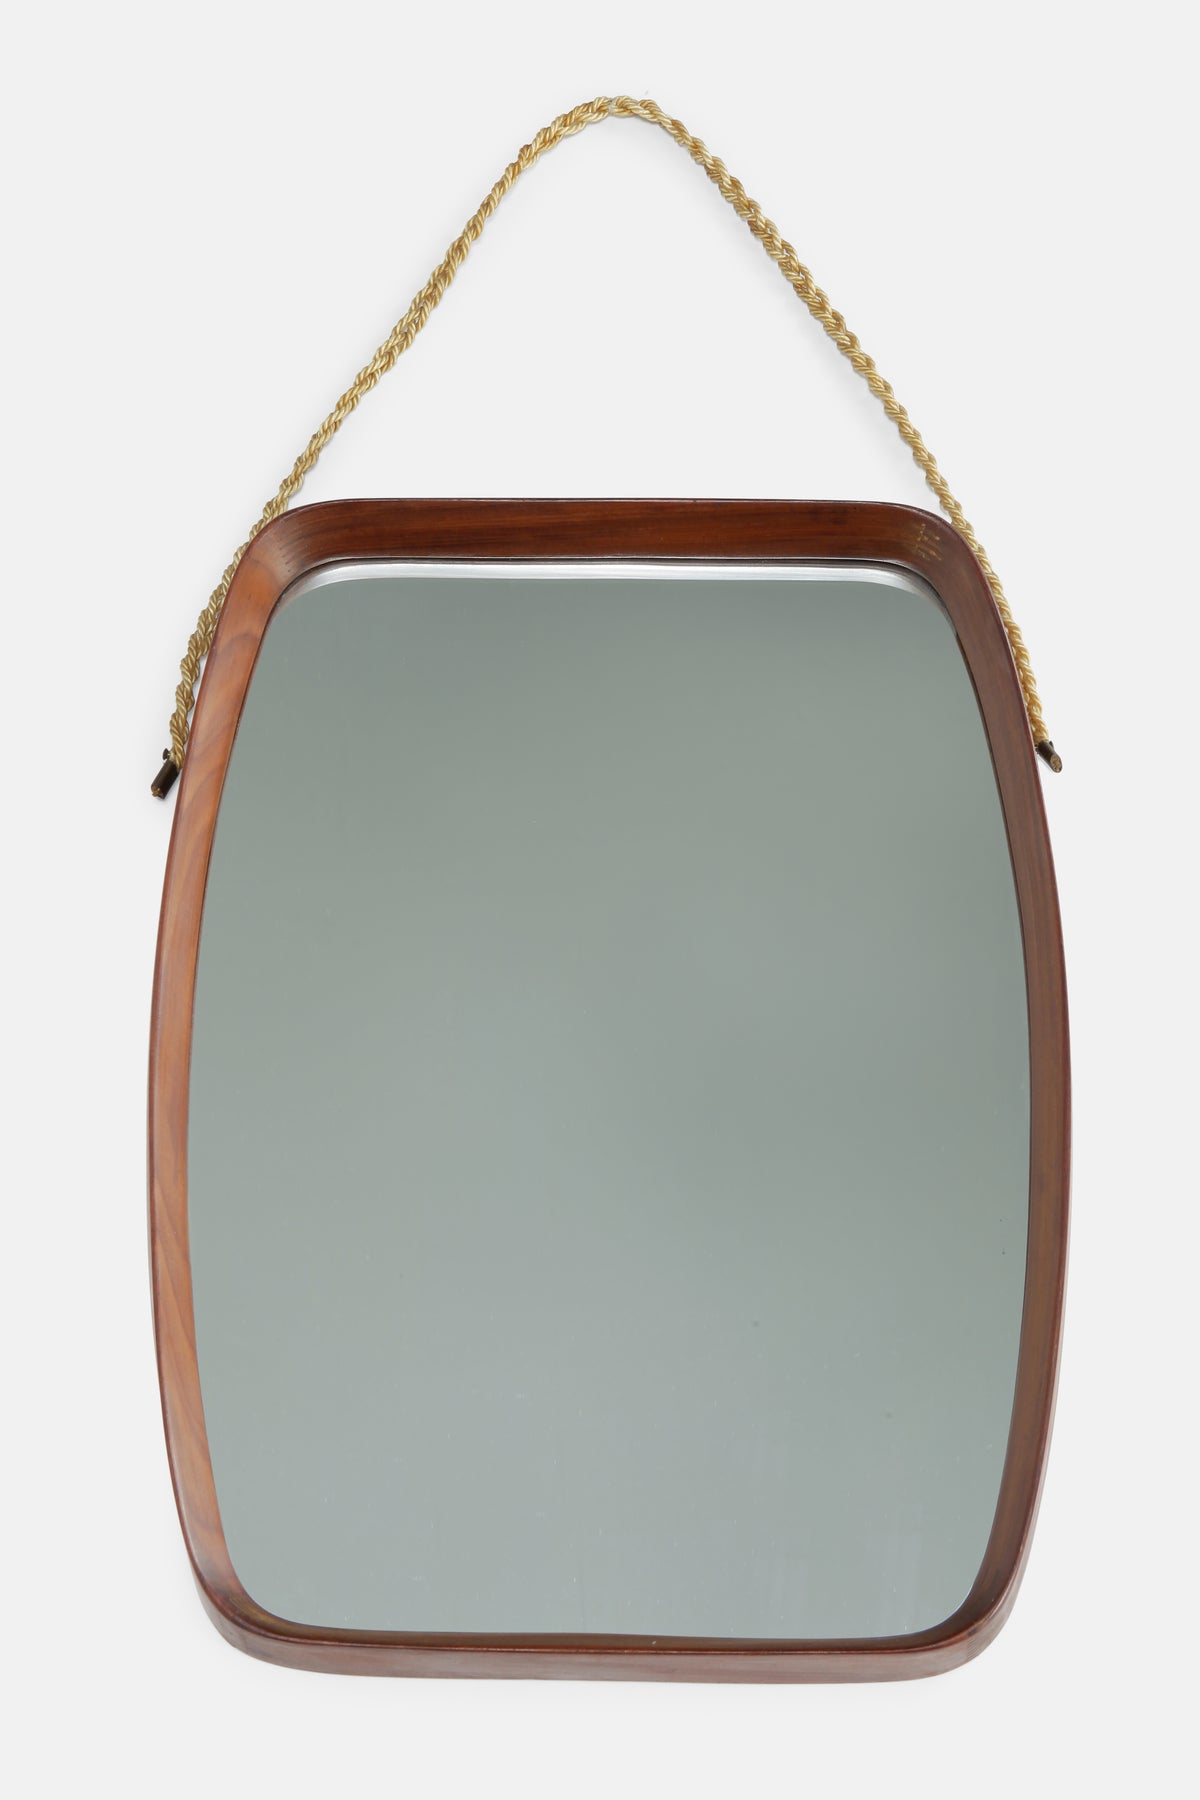 Italian mahogany Mirror, 50s